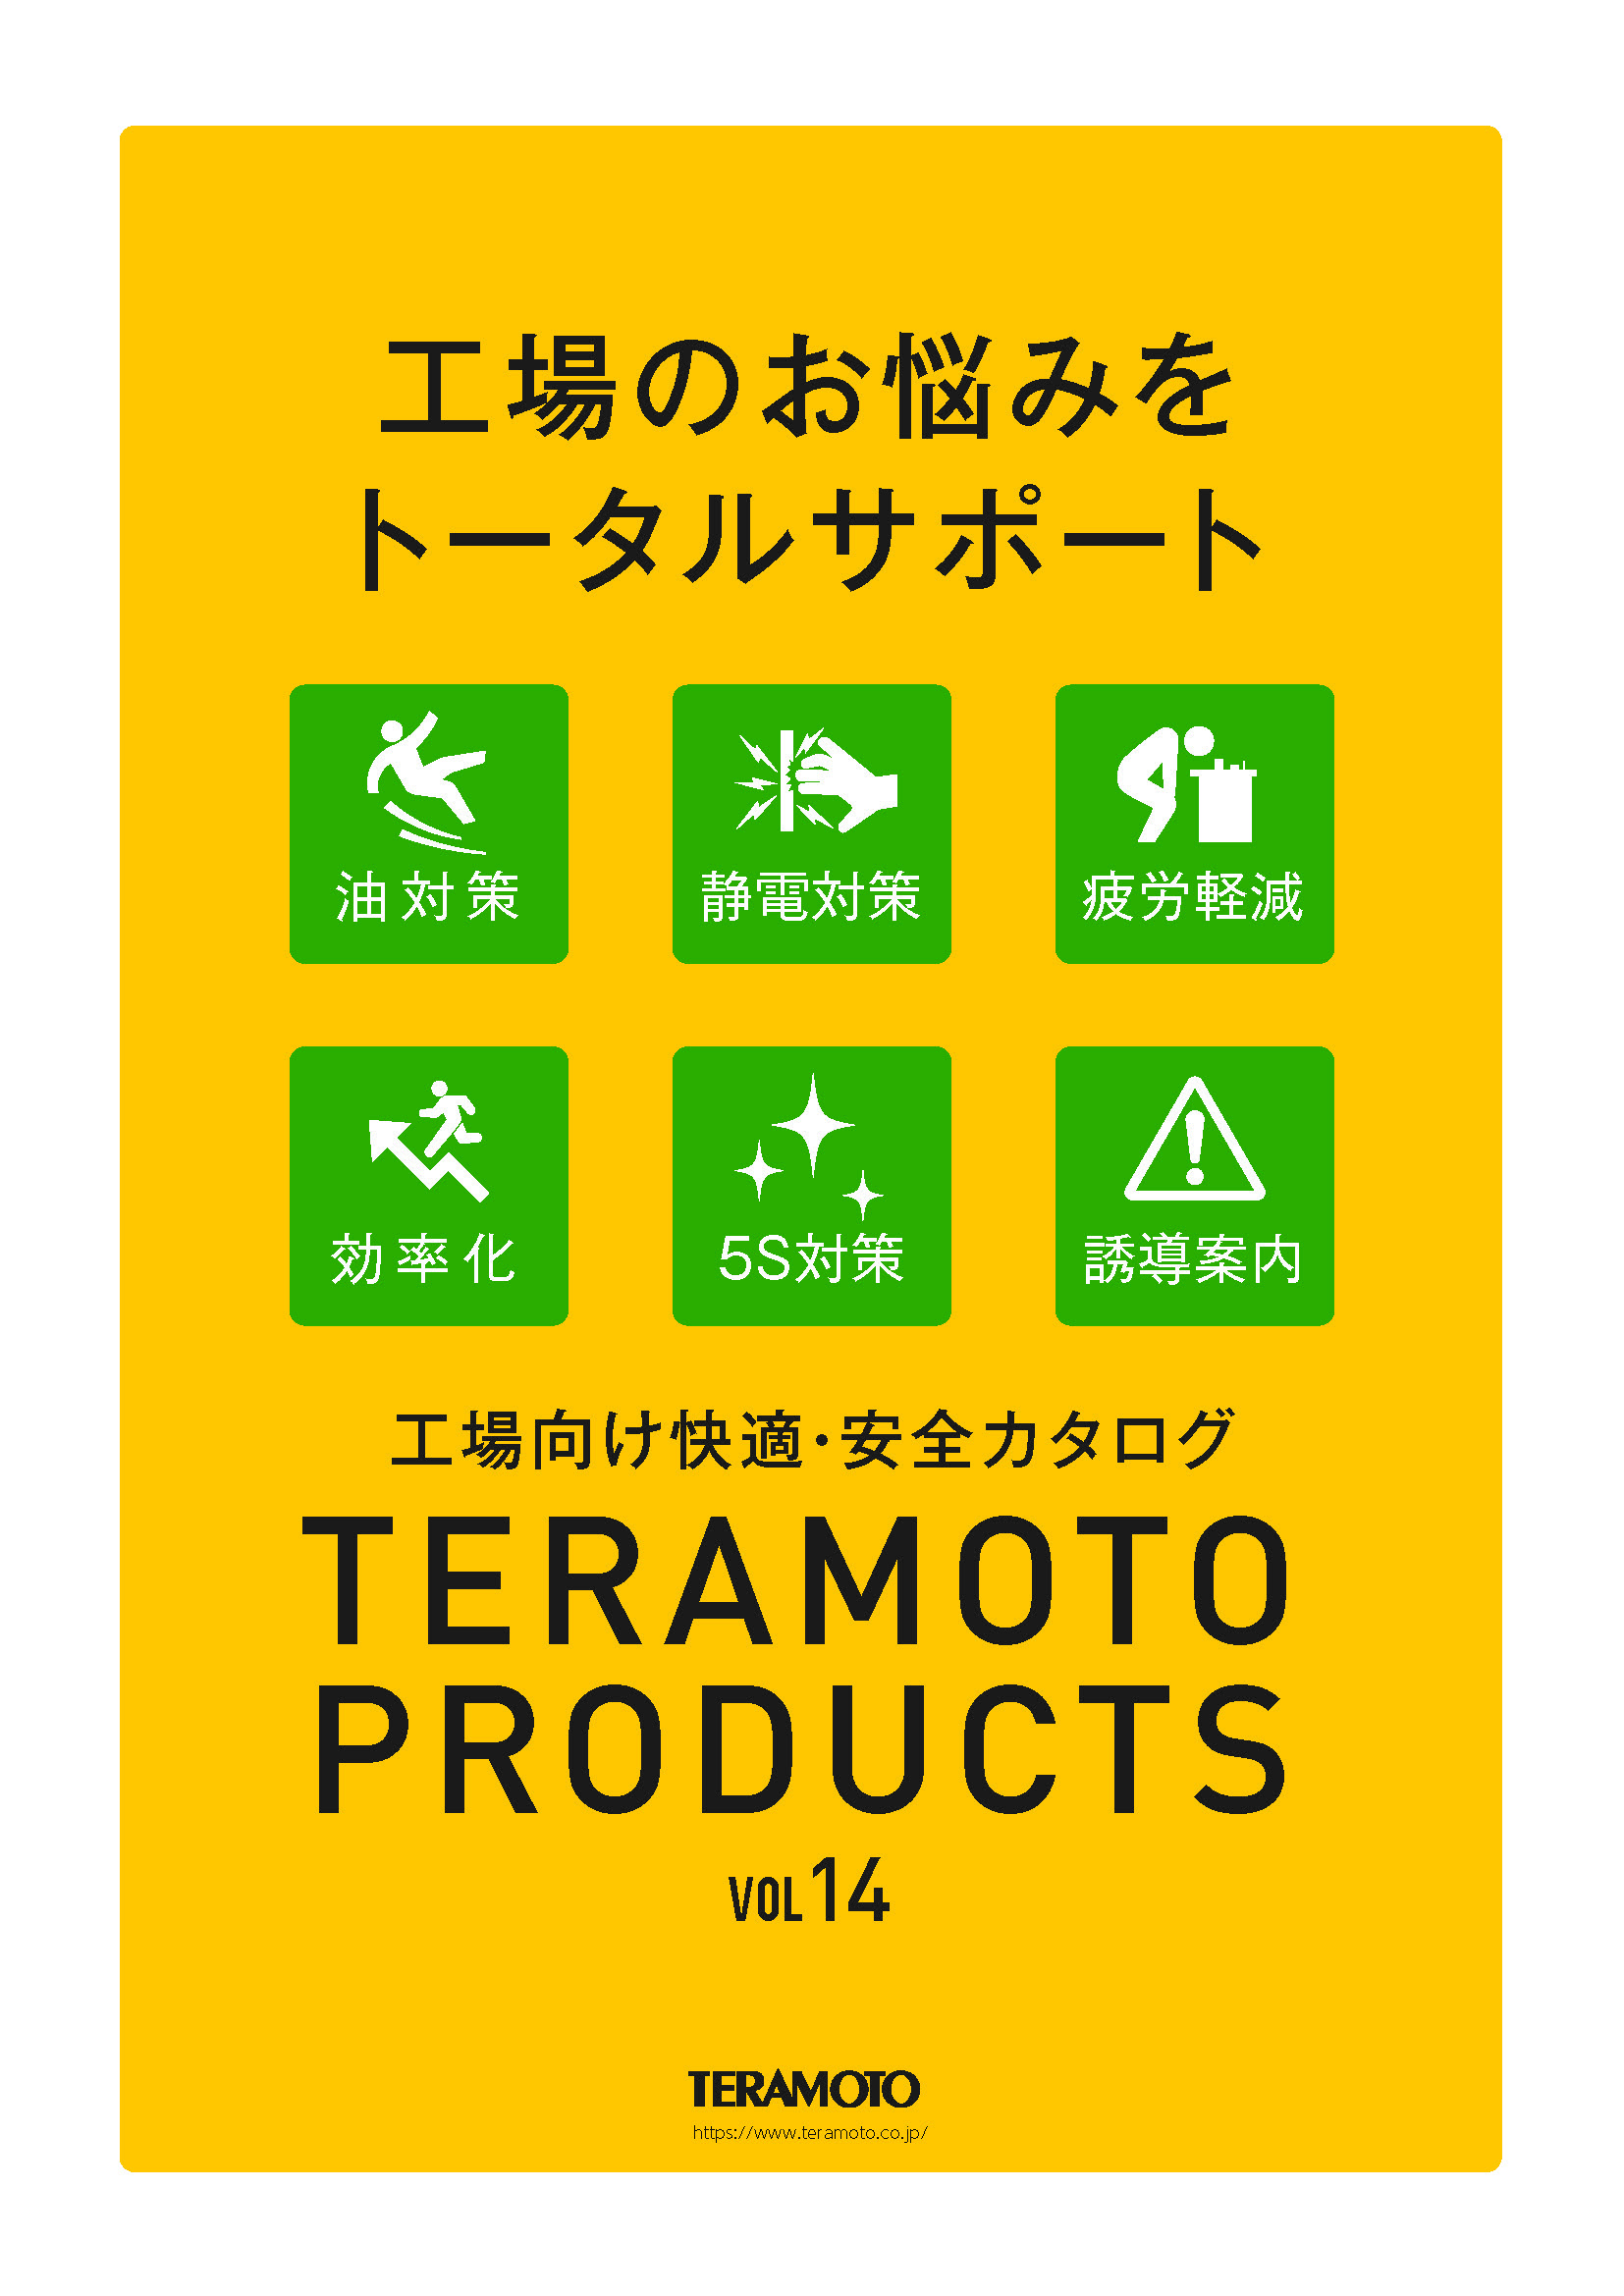 日本全国 送料無料 法人限定 カートフレーム 折り畳み バンパー付き DS-574-030-0